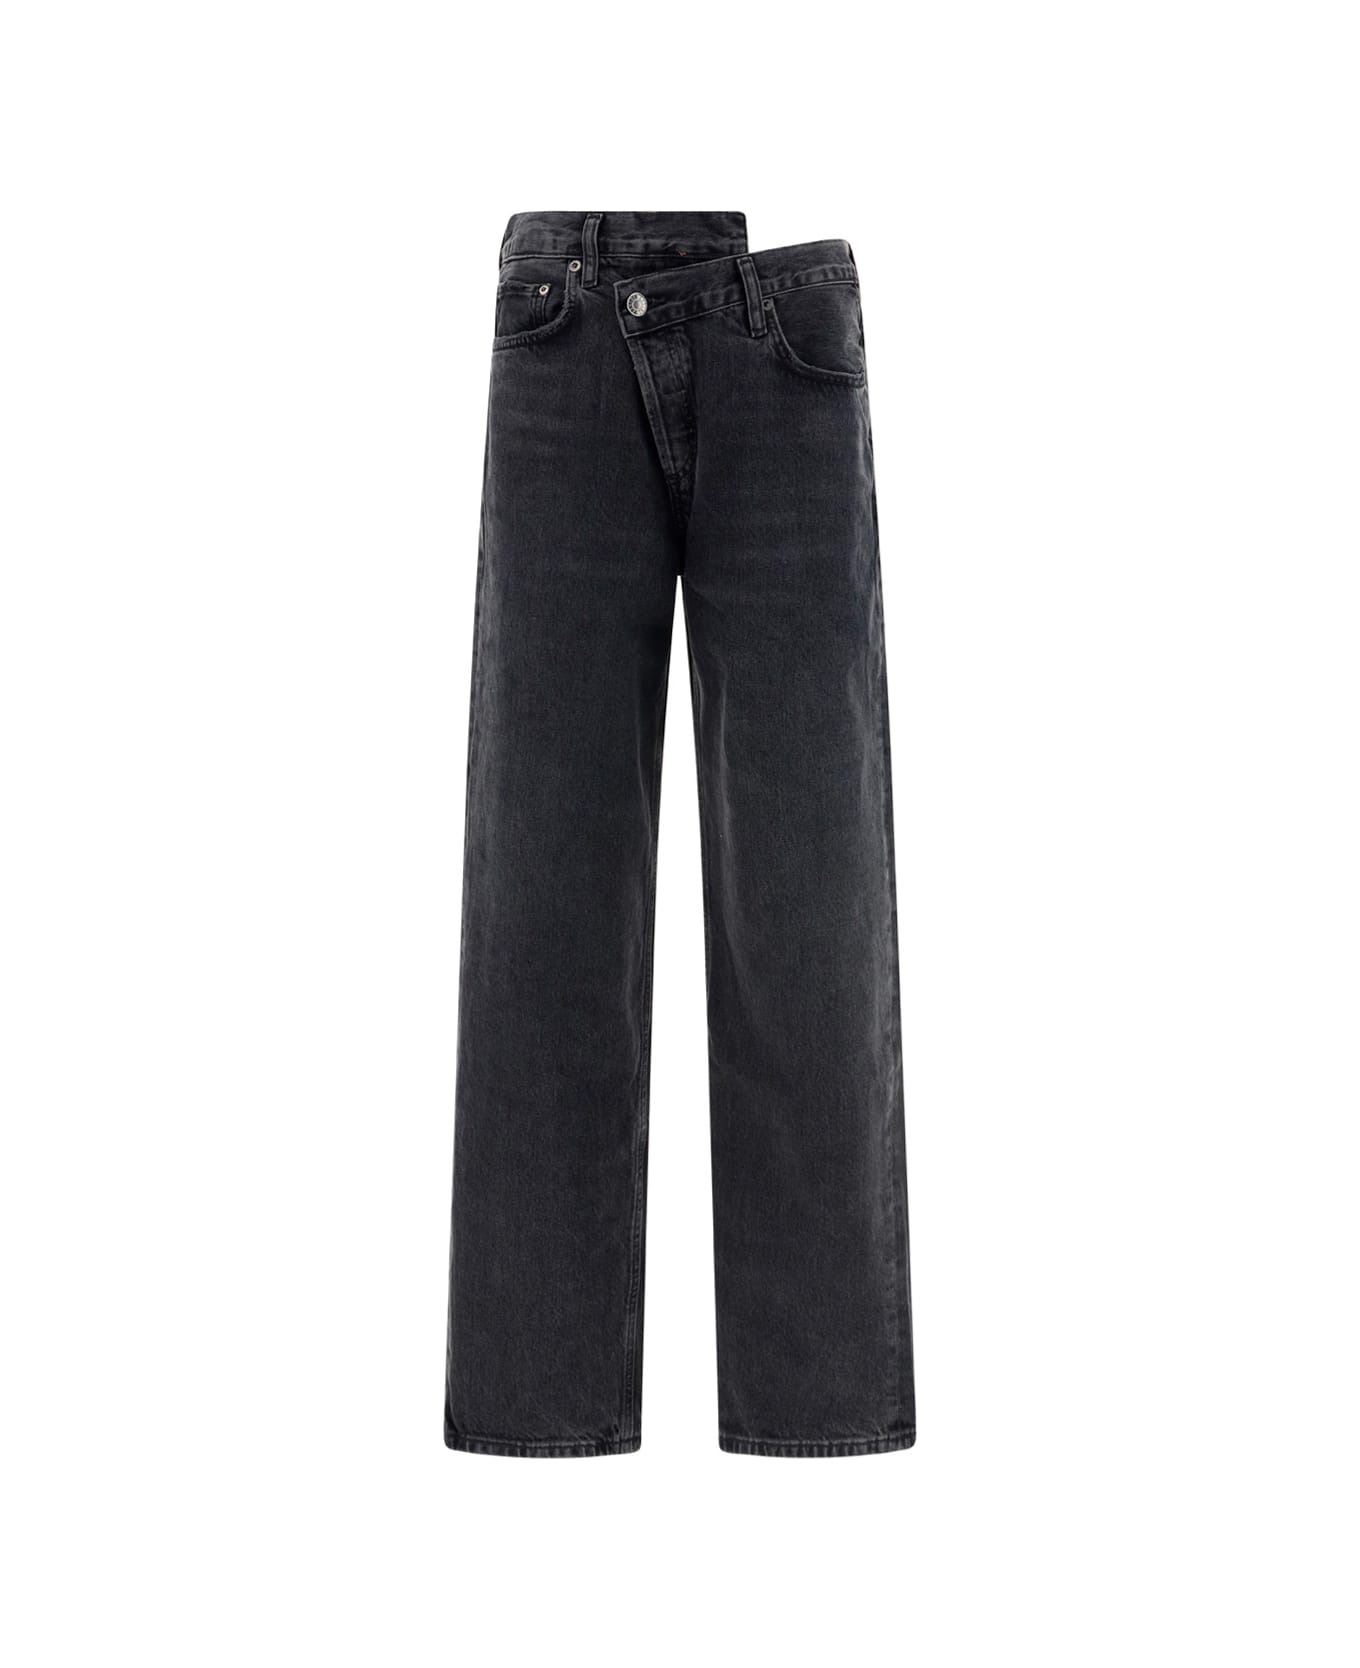 AGOLDE Jeans - BLACK